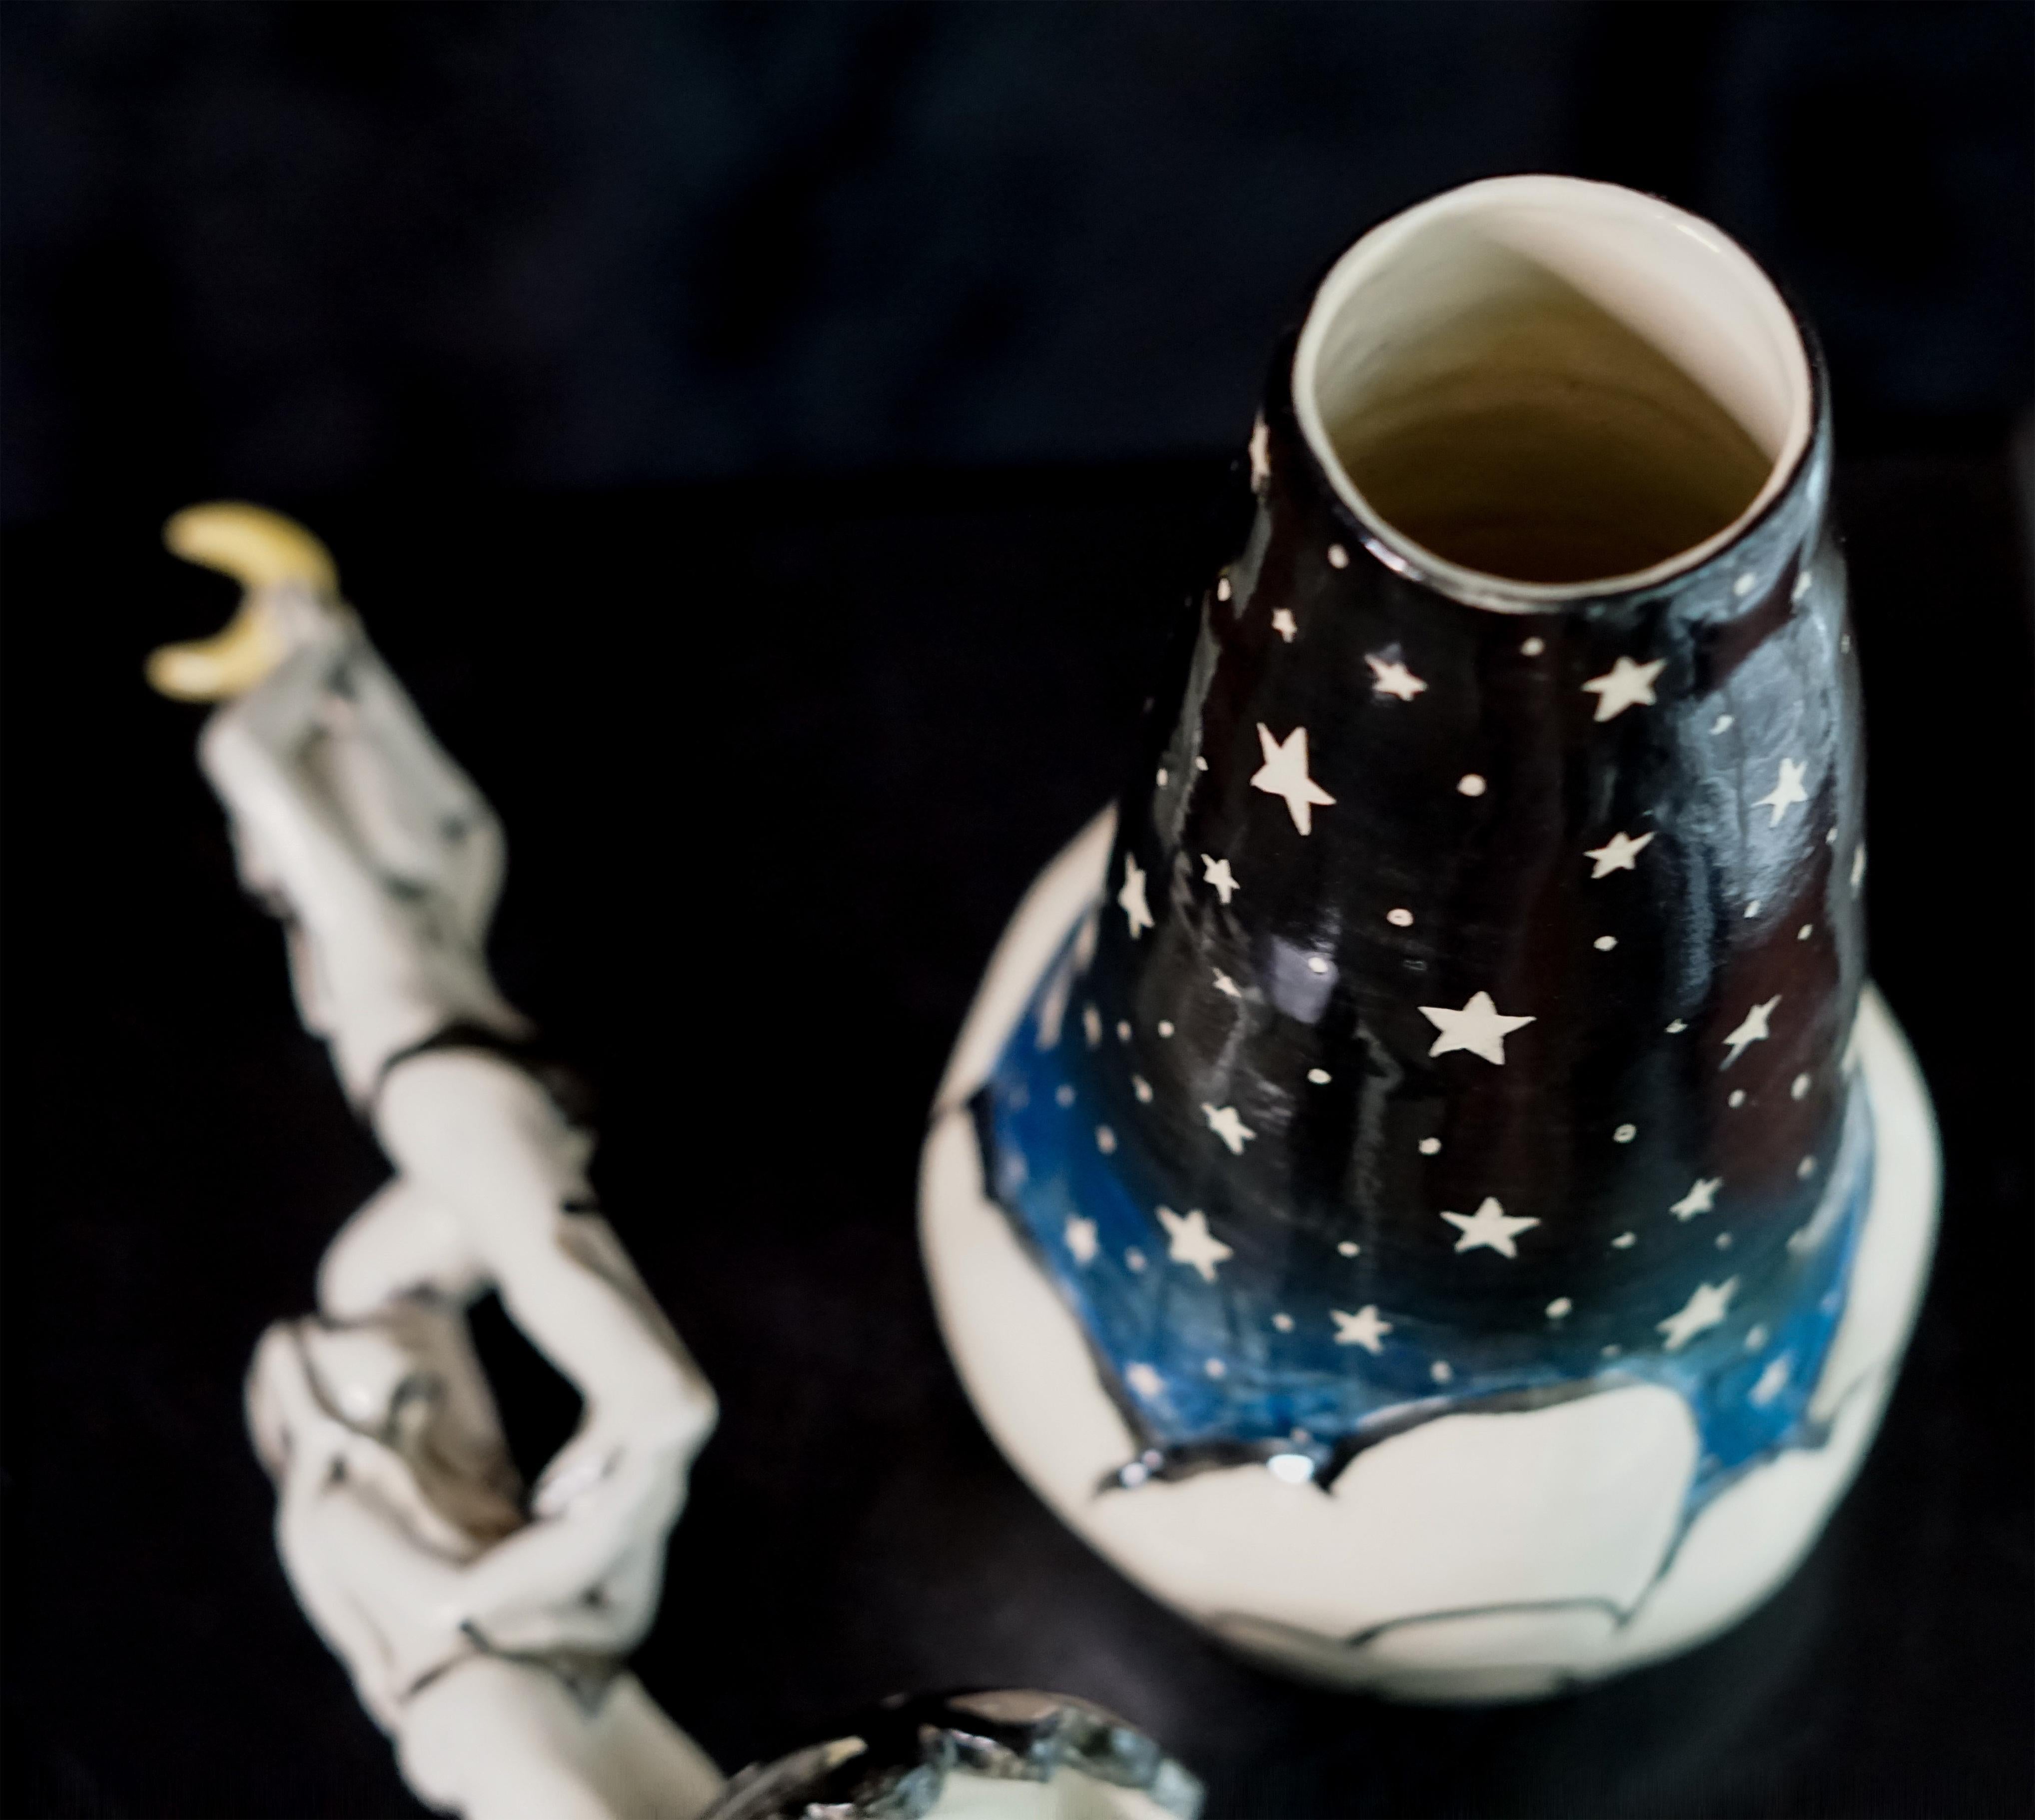 Die Nacht, in der wir den Mond aufhängten, 2023 von Alex Hodge
Aus der Serie Sculptural Jar
Handgefertigte Porzellanskulptur mit Sgraffito
15,5 x 5 x 5 Zoll

Dieses handgefertigte skulpturale Gefäß steht in der langen Tradition der Mythologie um die